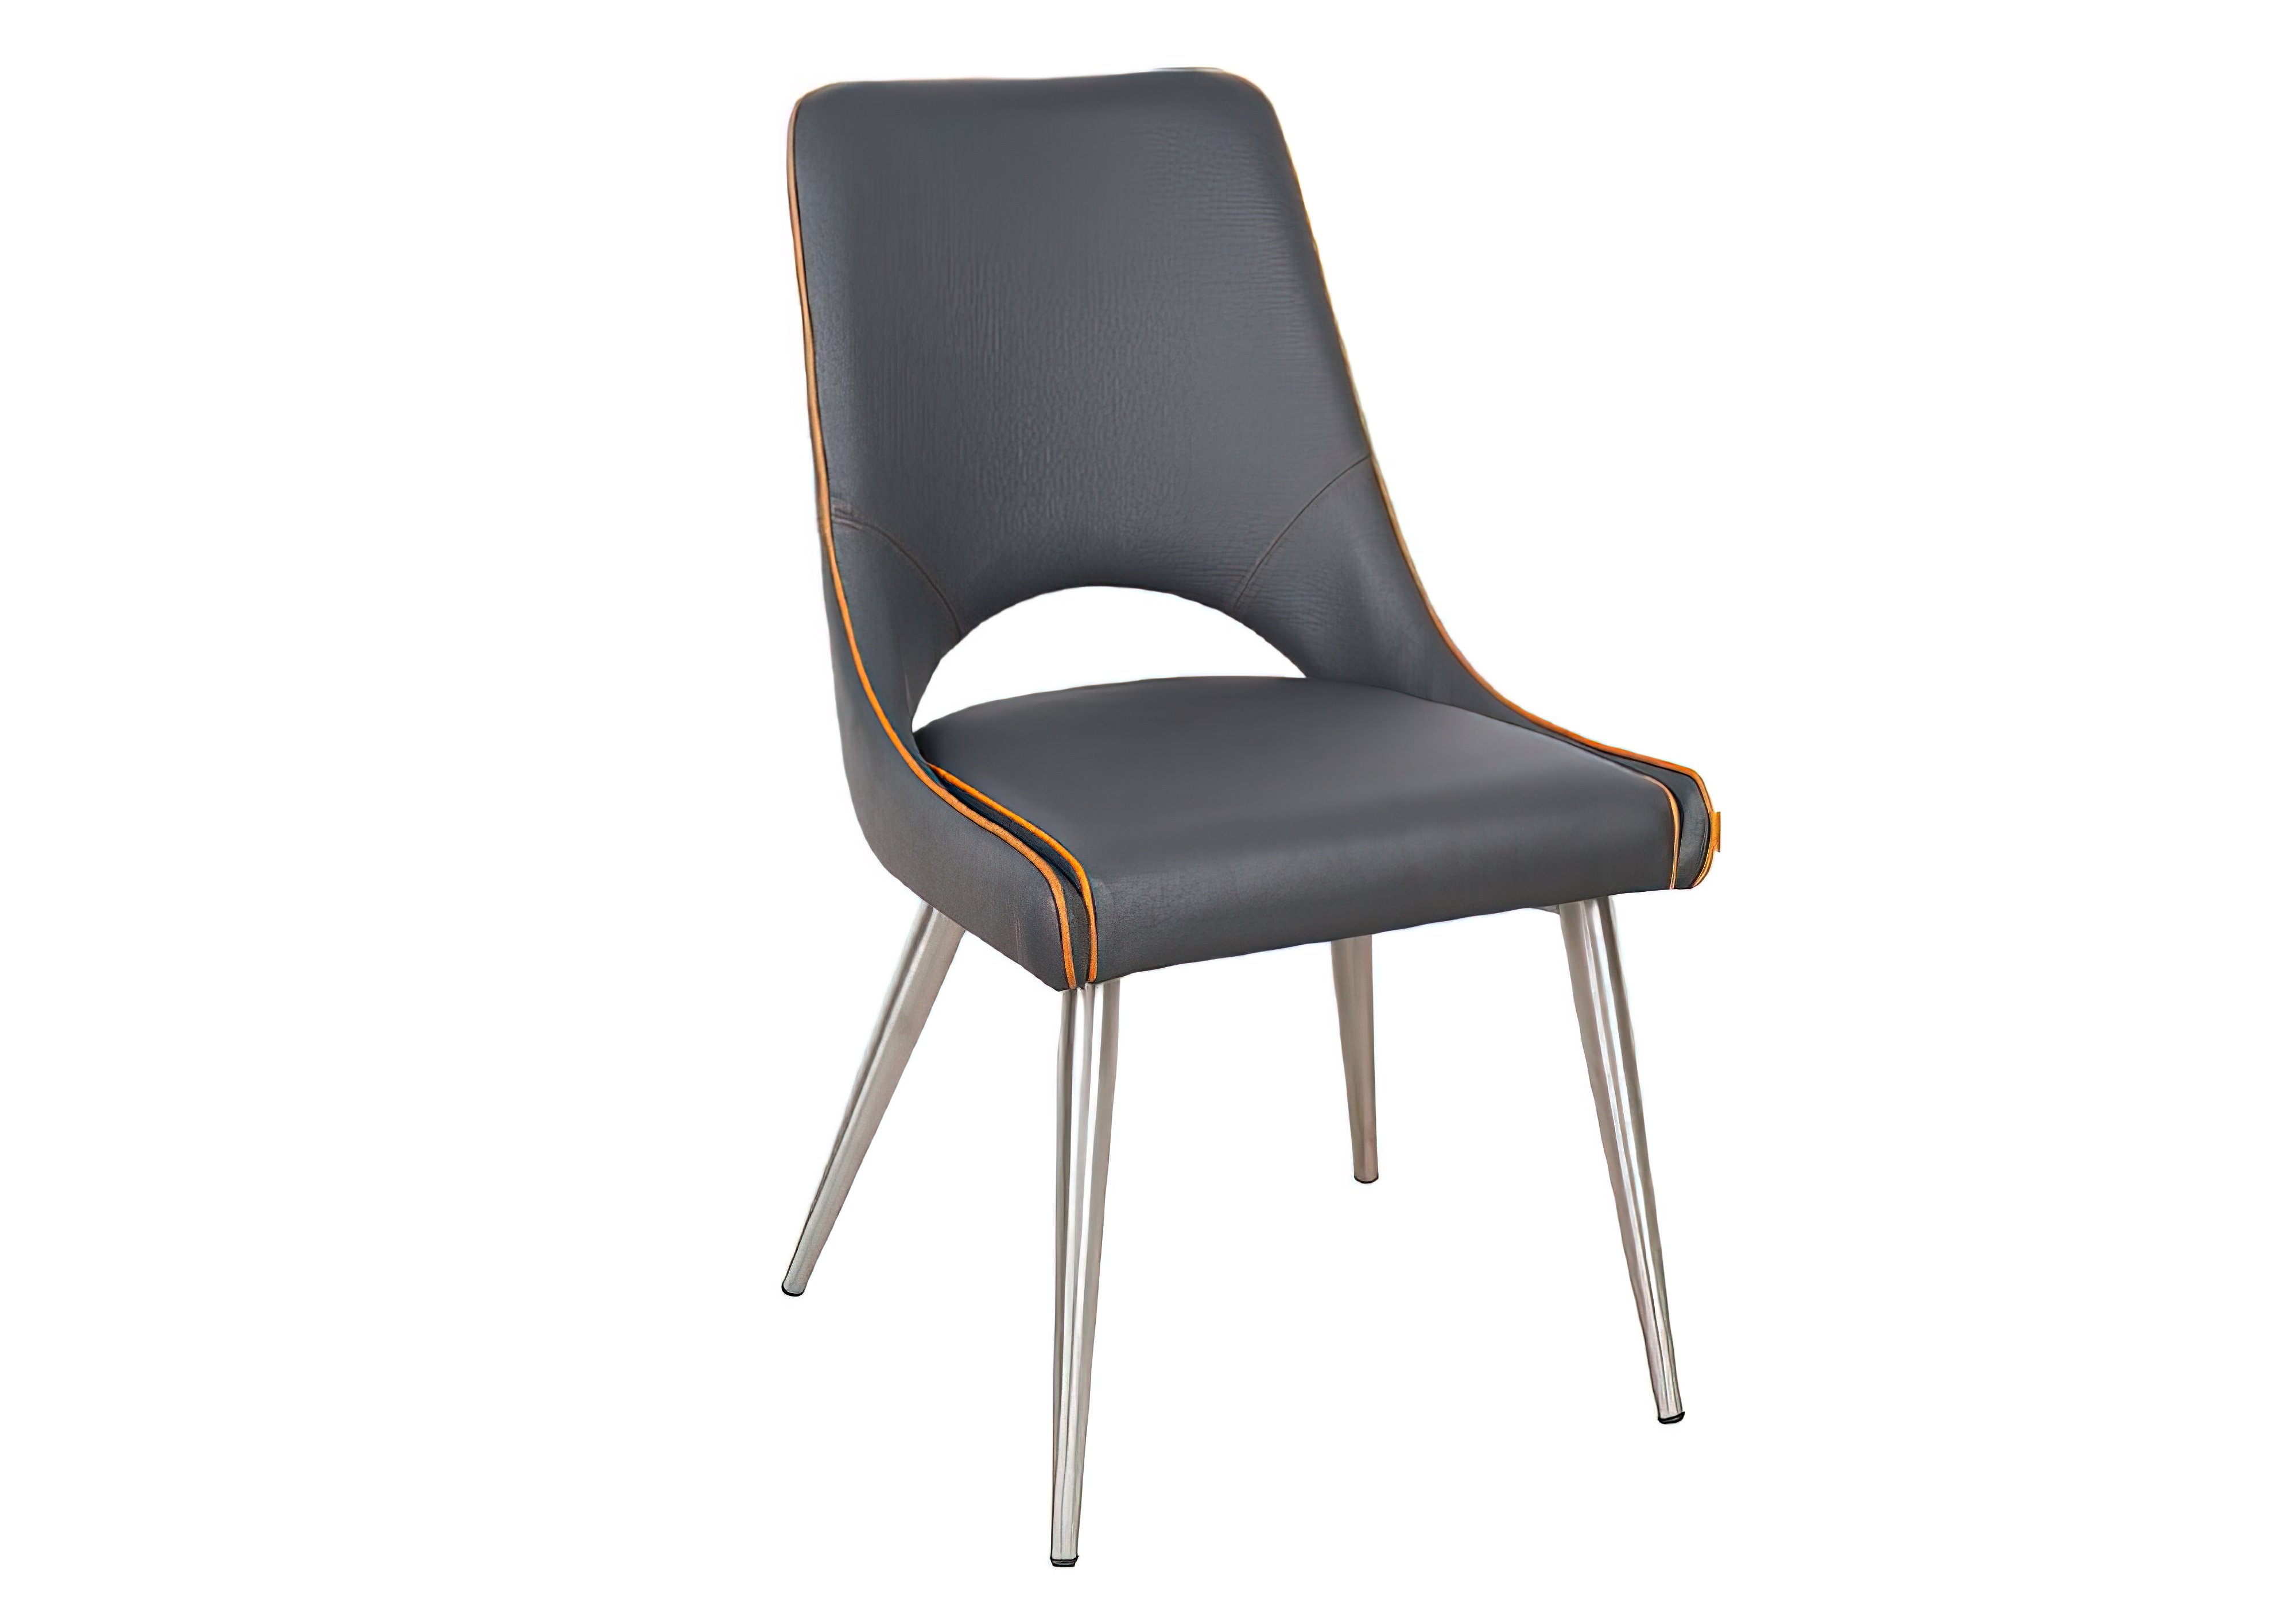 Кухонный стул Orange Калио, Тип Обеденный, Высота 89см, Ширина сиденья 50см